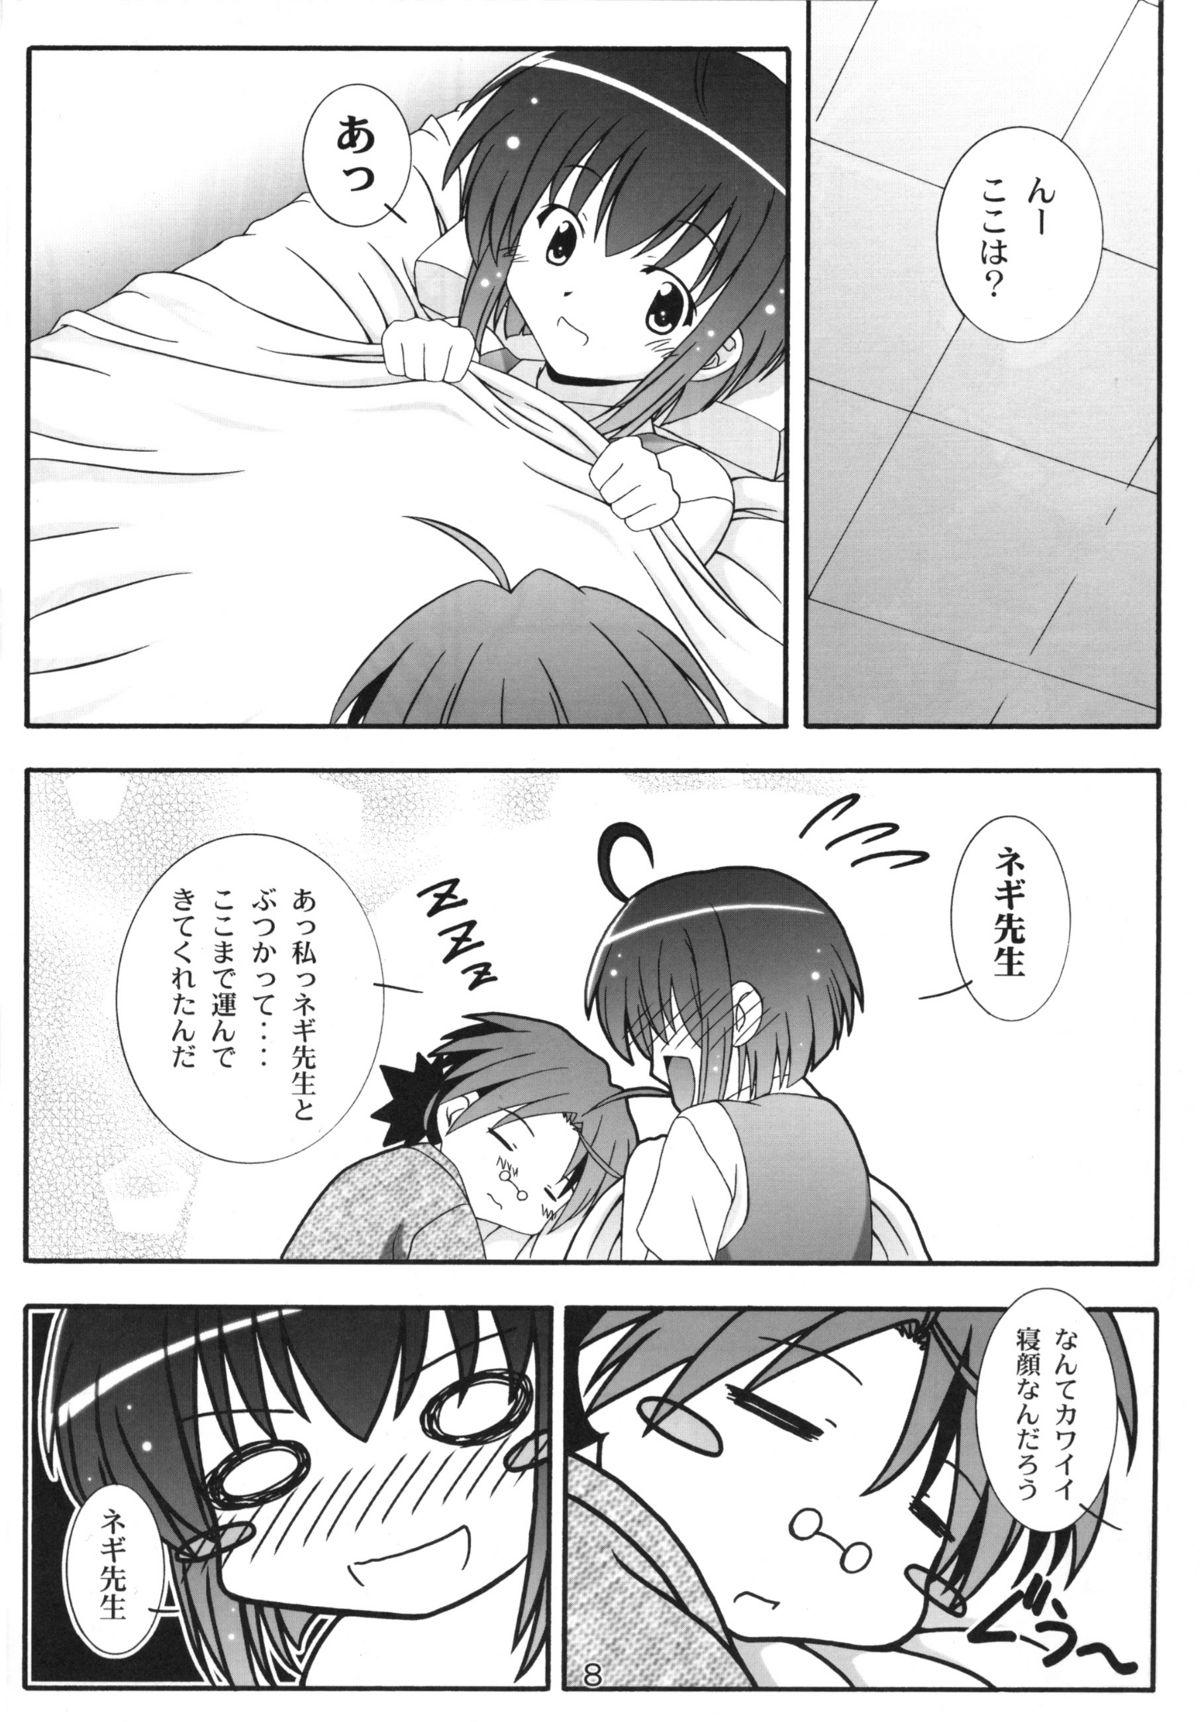 Tight Cunt Nodoca no Dream | Nodoca's Dream - Mahou sensei negima Price - Page 7